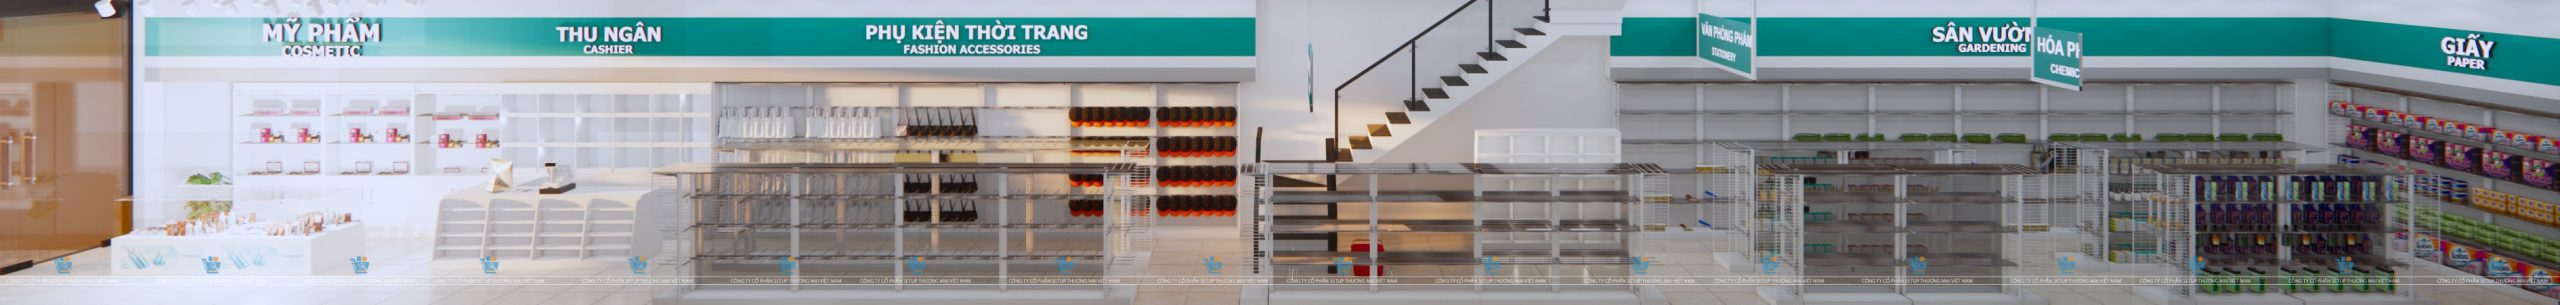 mở siêu thị vật liệu xây dựng và mẫu thiết kế siêu thị mini đẹp